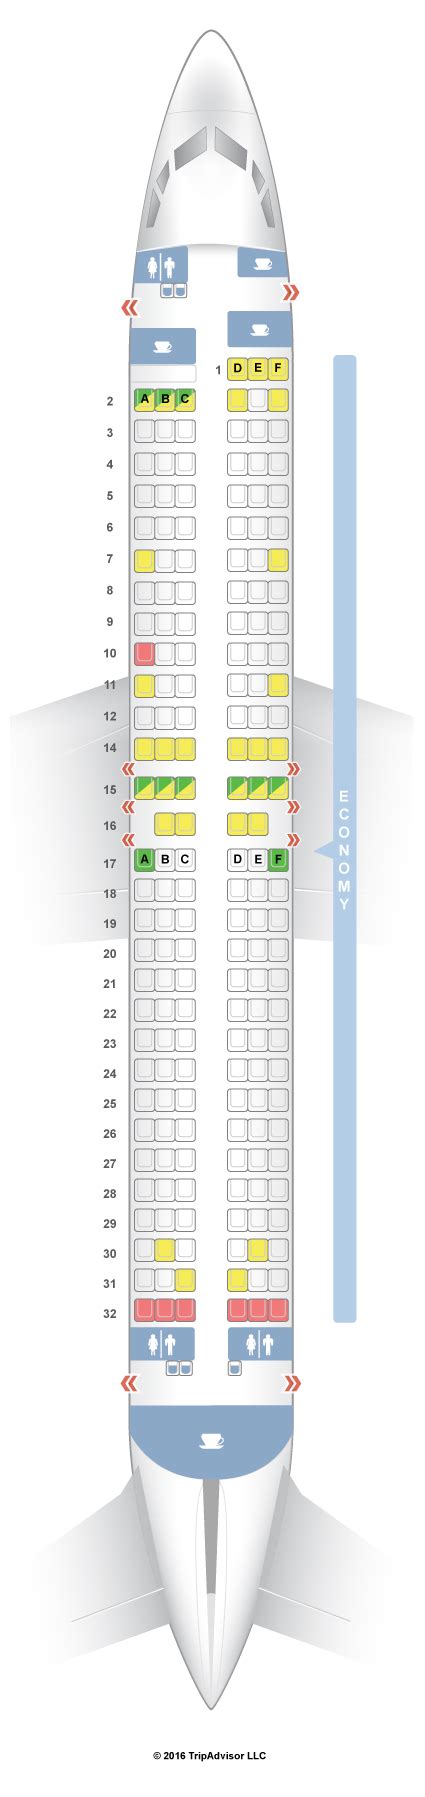 Seatguru Seat Map Sas Boeing 737 800 738